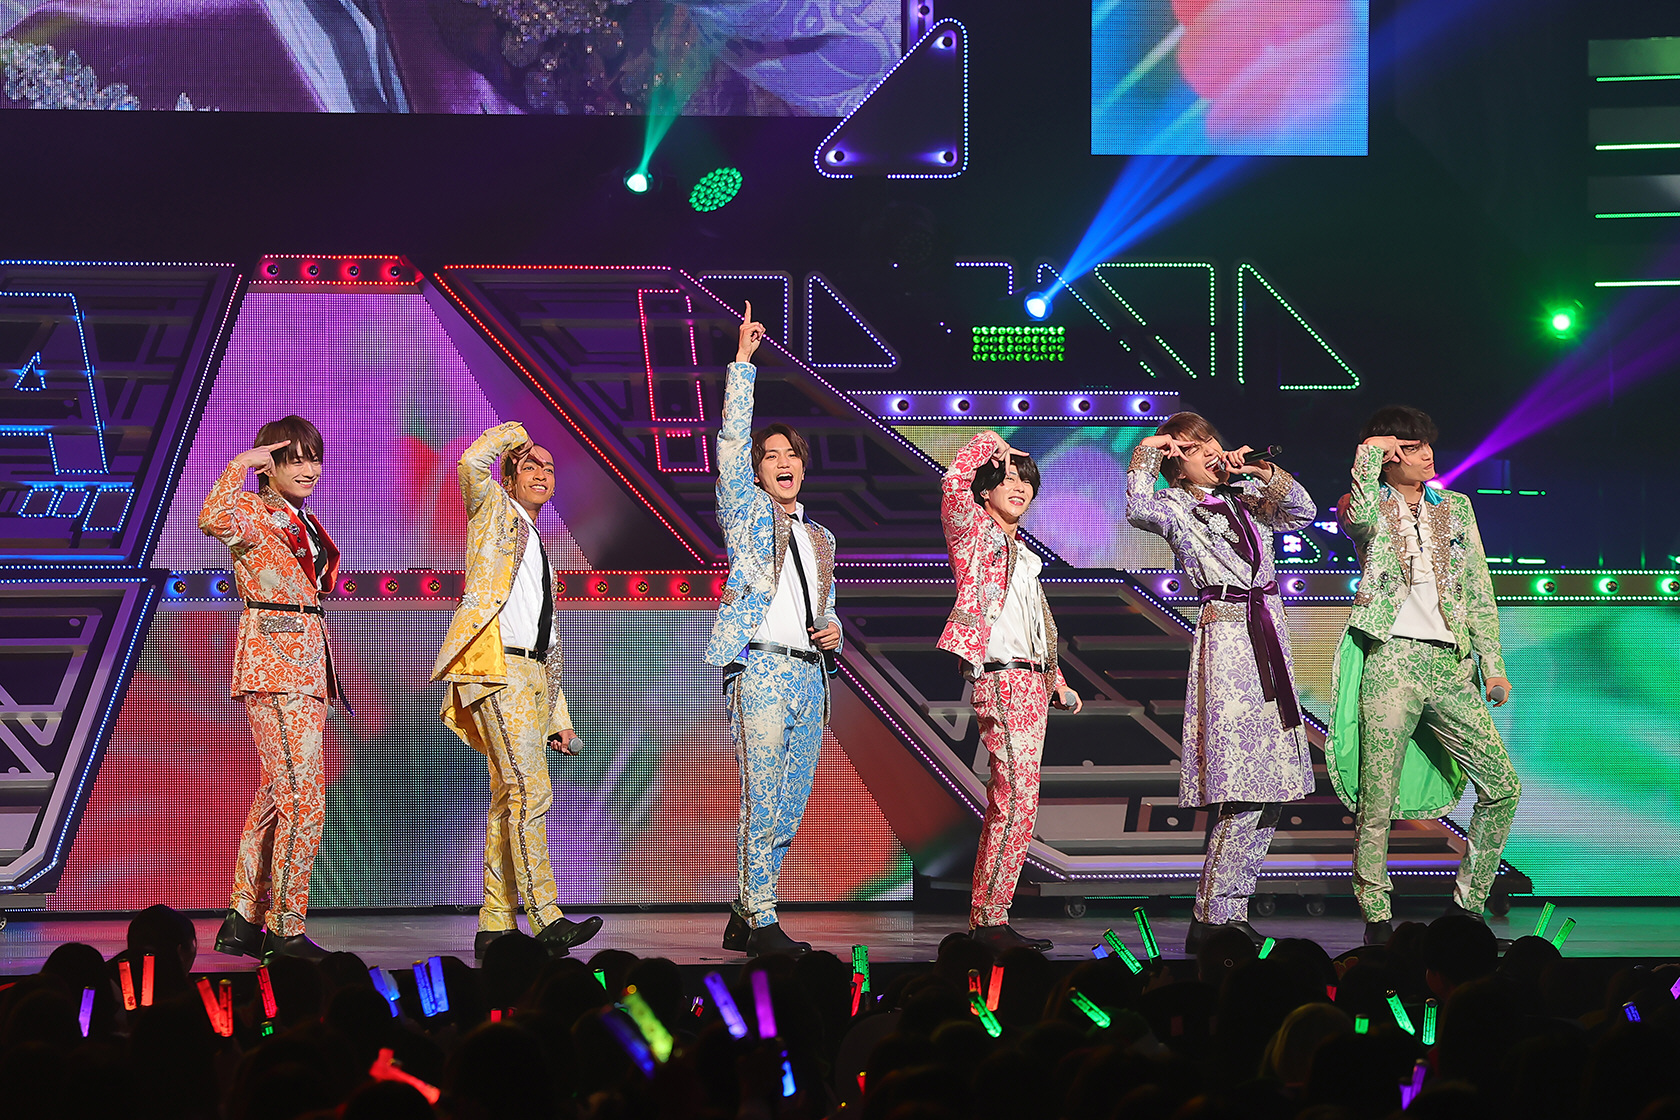 関西ジャニーズJr.「Aぇ!group」グループ初全国ツアーの東京公演 8000人の前で全22曲熱唱!